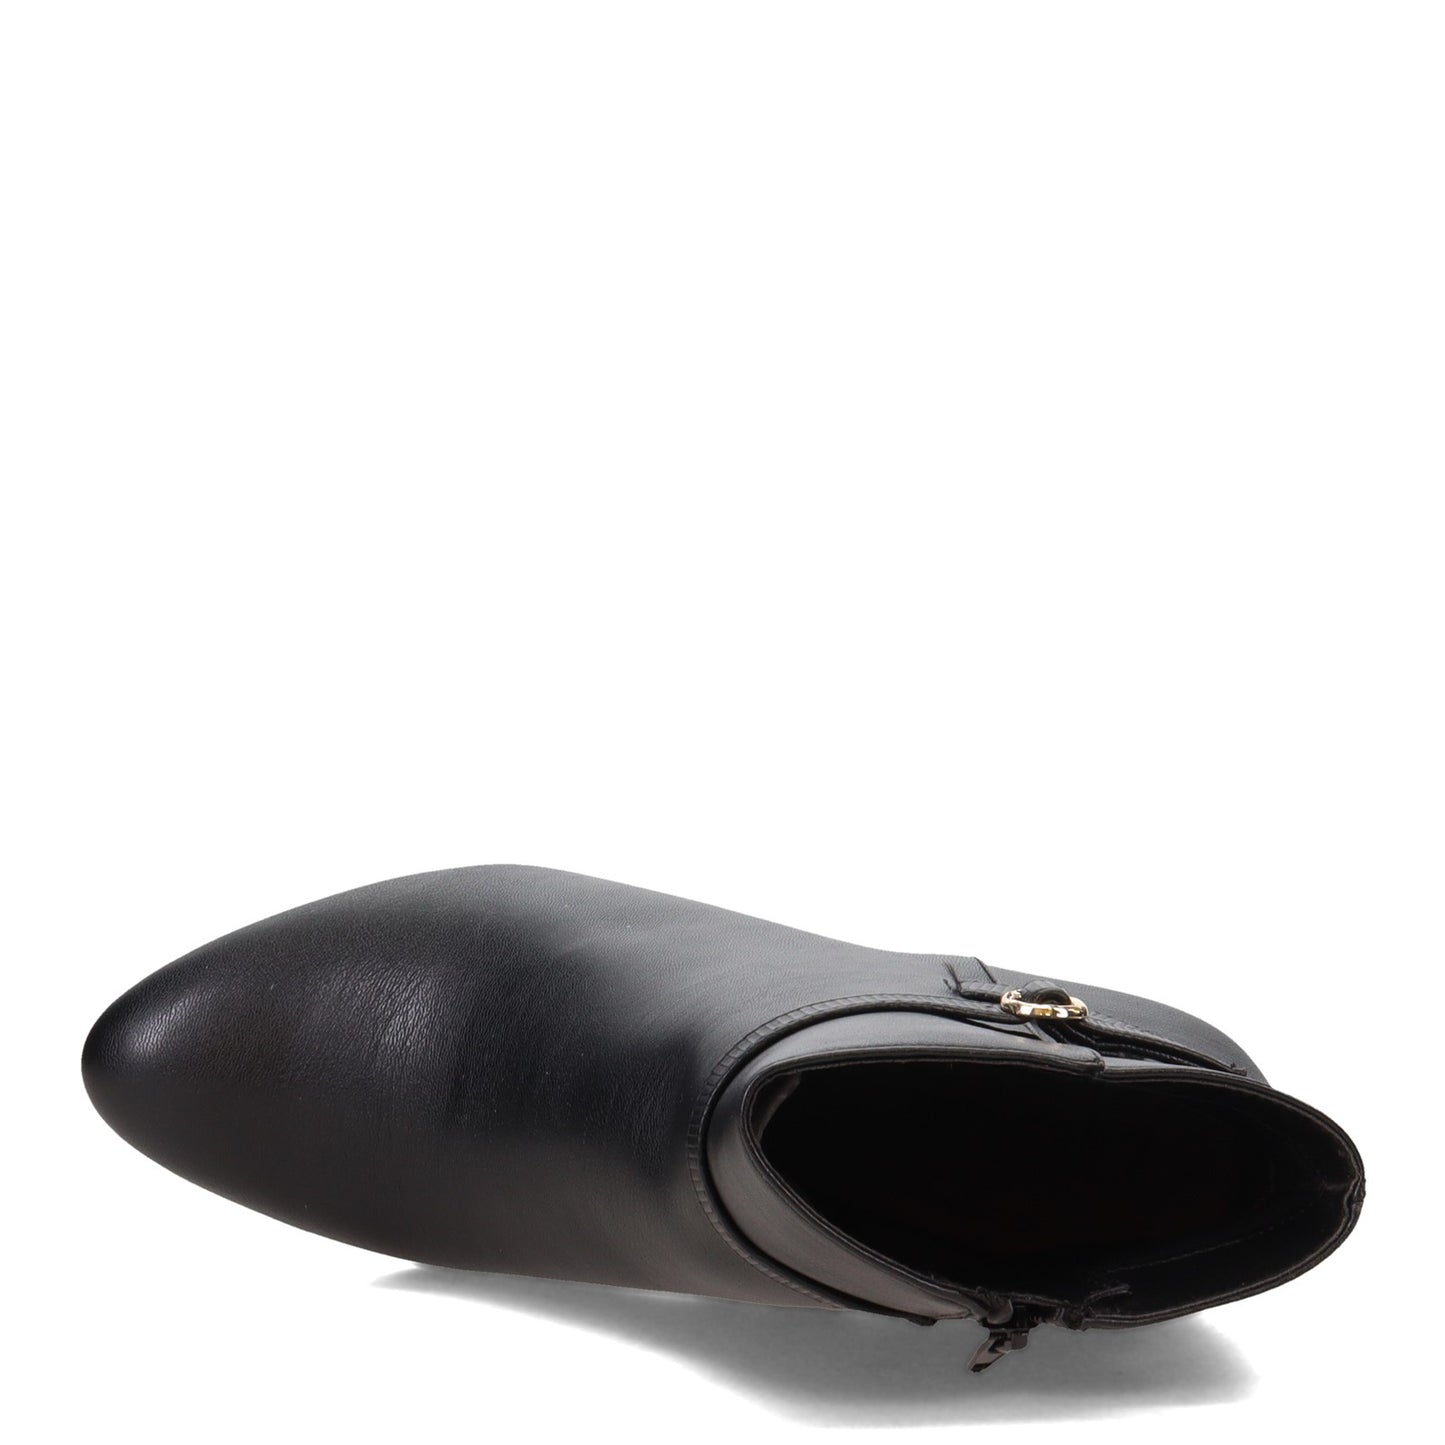 Peltz Shoes  Women's LifeStride Guild Boot BLACK I1850F1001